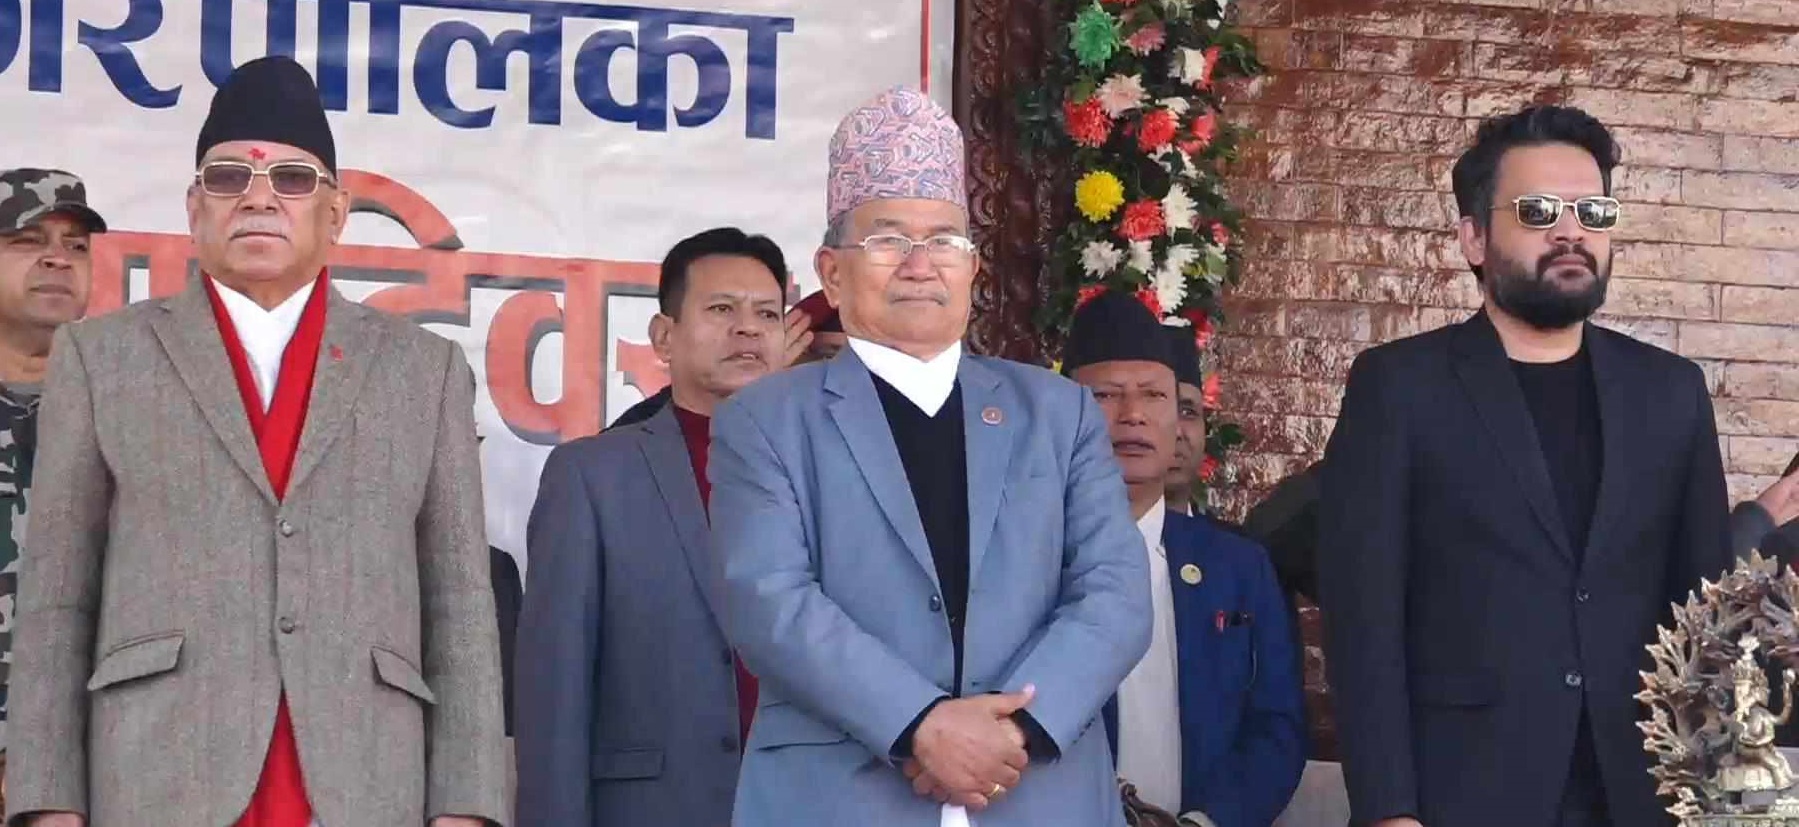 काठमाडौँ उपत्यकाका फोहार व्यवस्थामा सरकारले गम्भीर पहल गरिरहेको छ : प्रधानमन्त्री